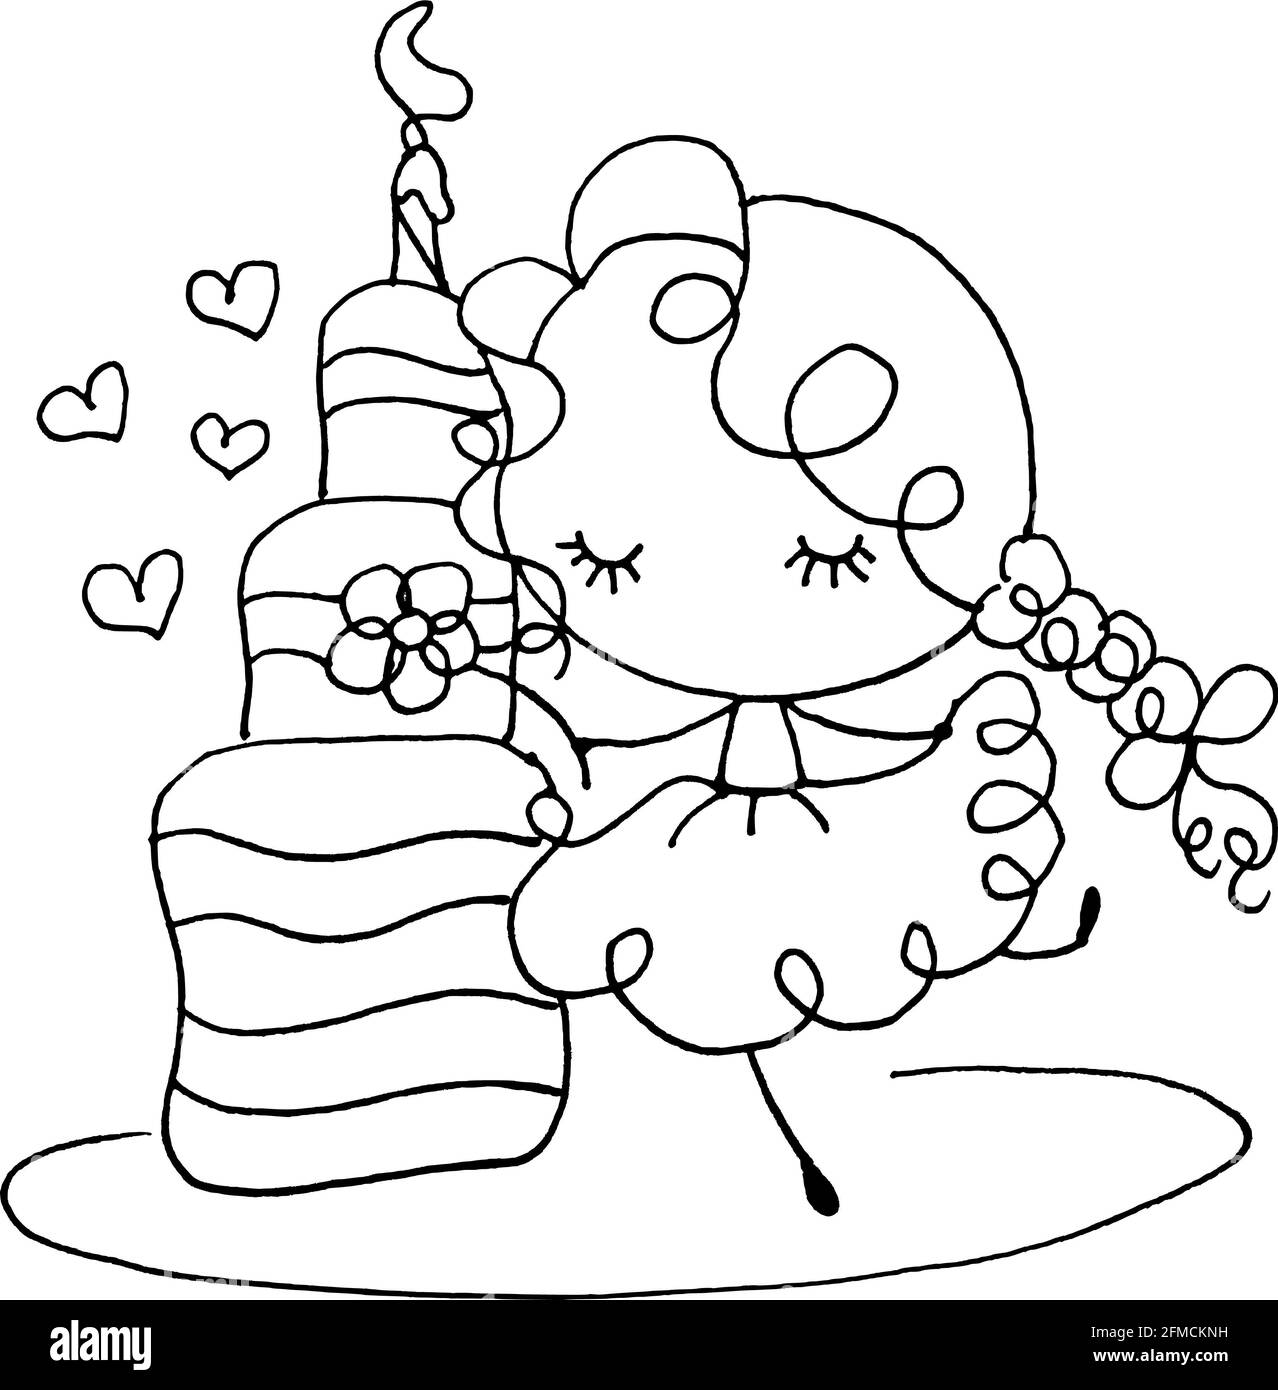 vector cartoon happy birthday Stock Photo